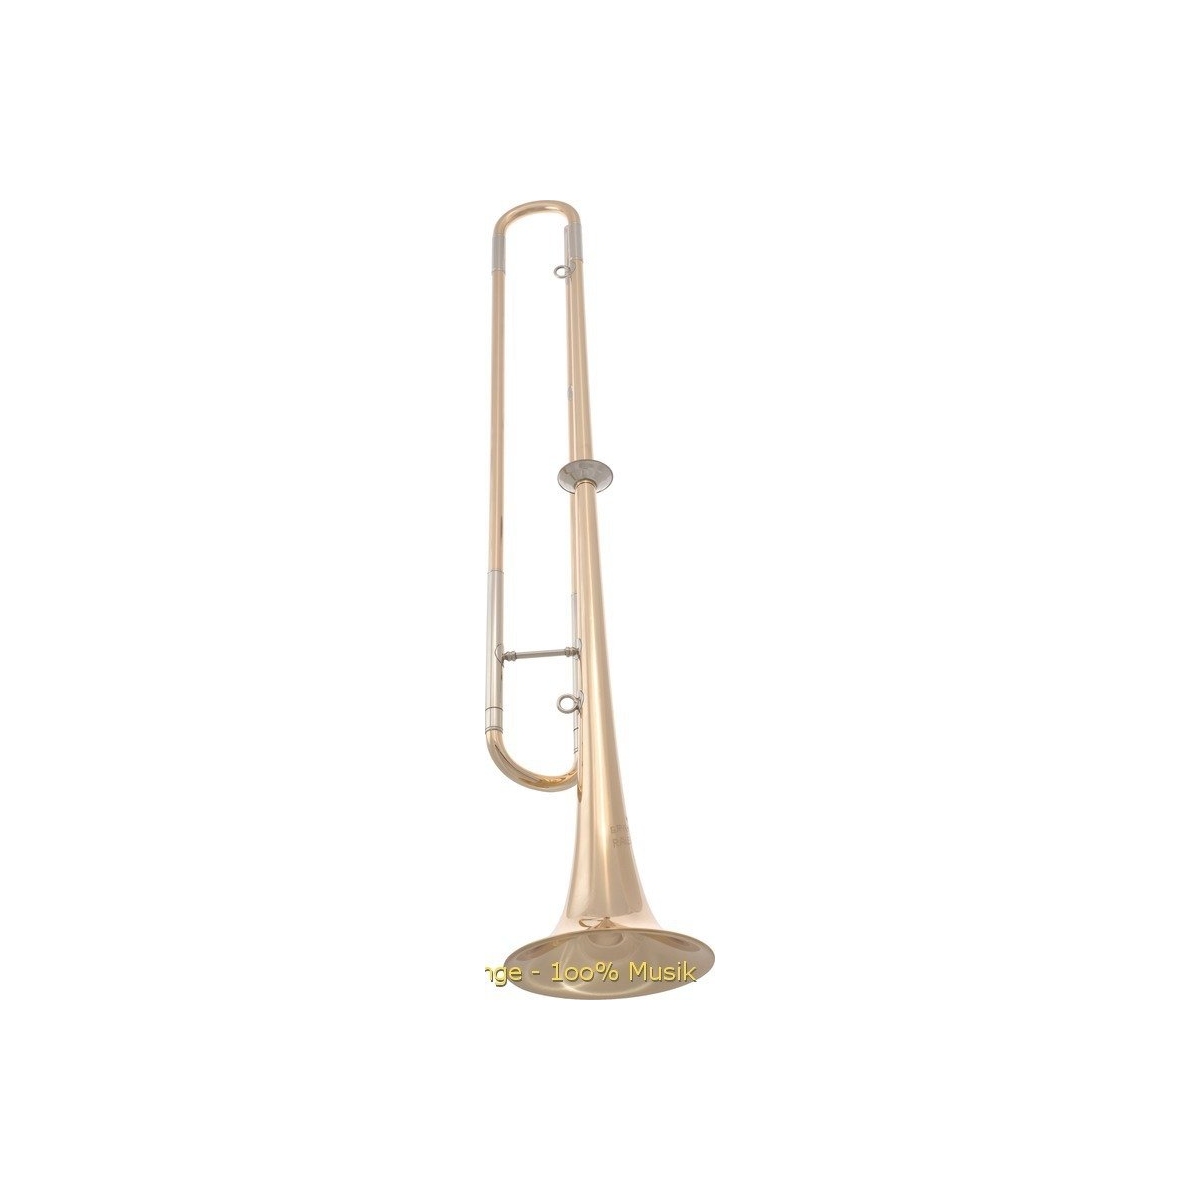 Original Steiff Zubehör Trompete Fanfare ca 14cm lang aus Metall sehr massiv 